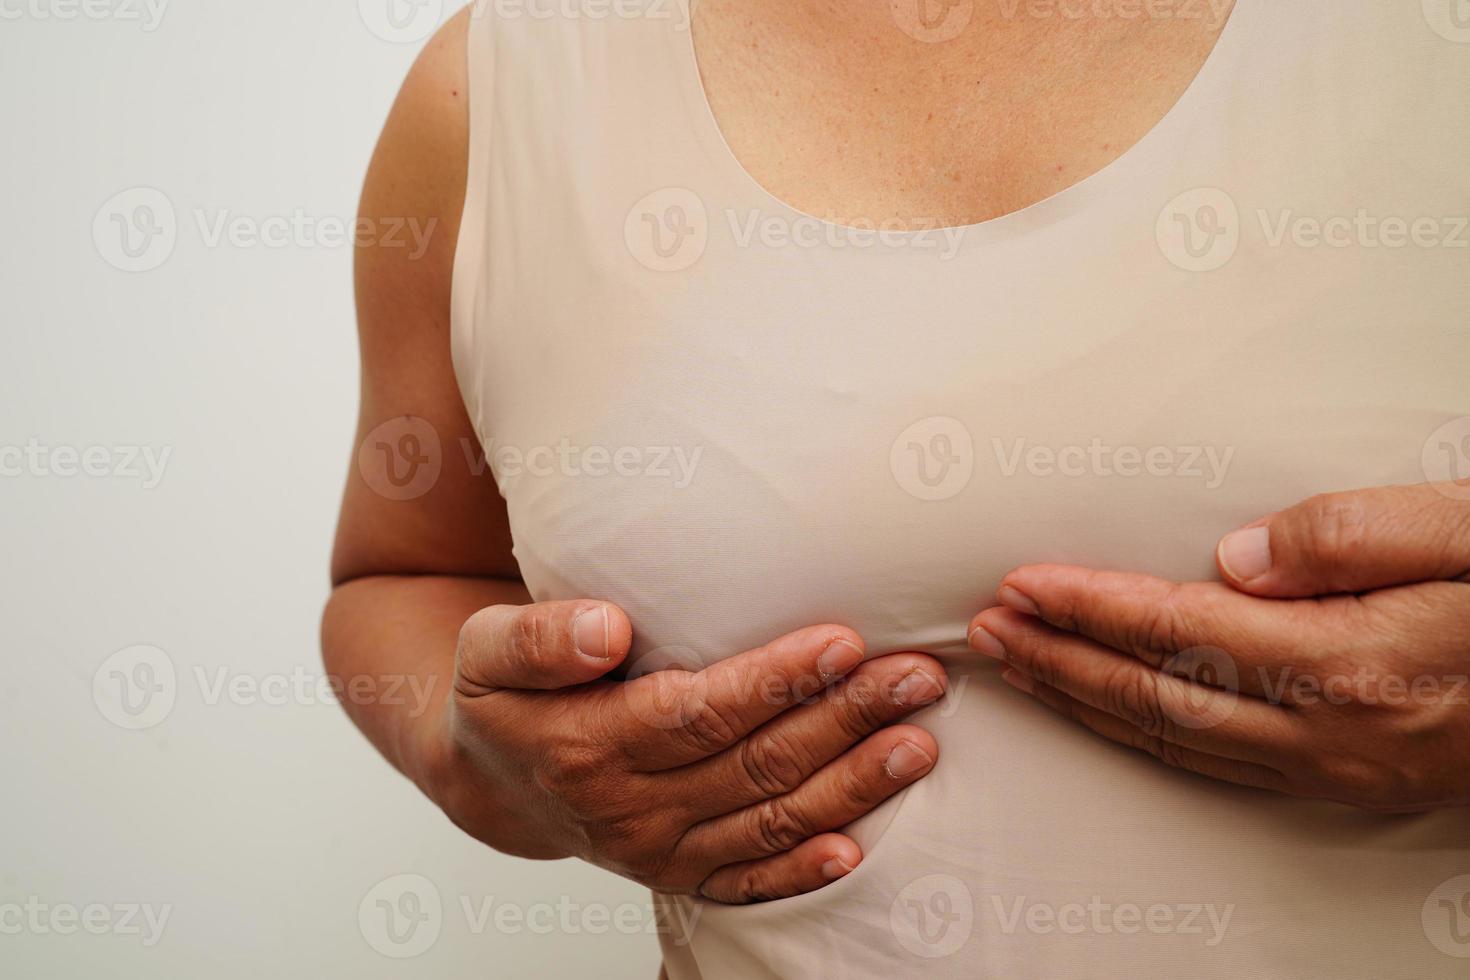 asiatico donna se stesso toccante dai un'occhiata grumo o Seno cancro, Seno se stesso esame. foto